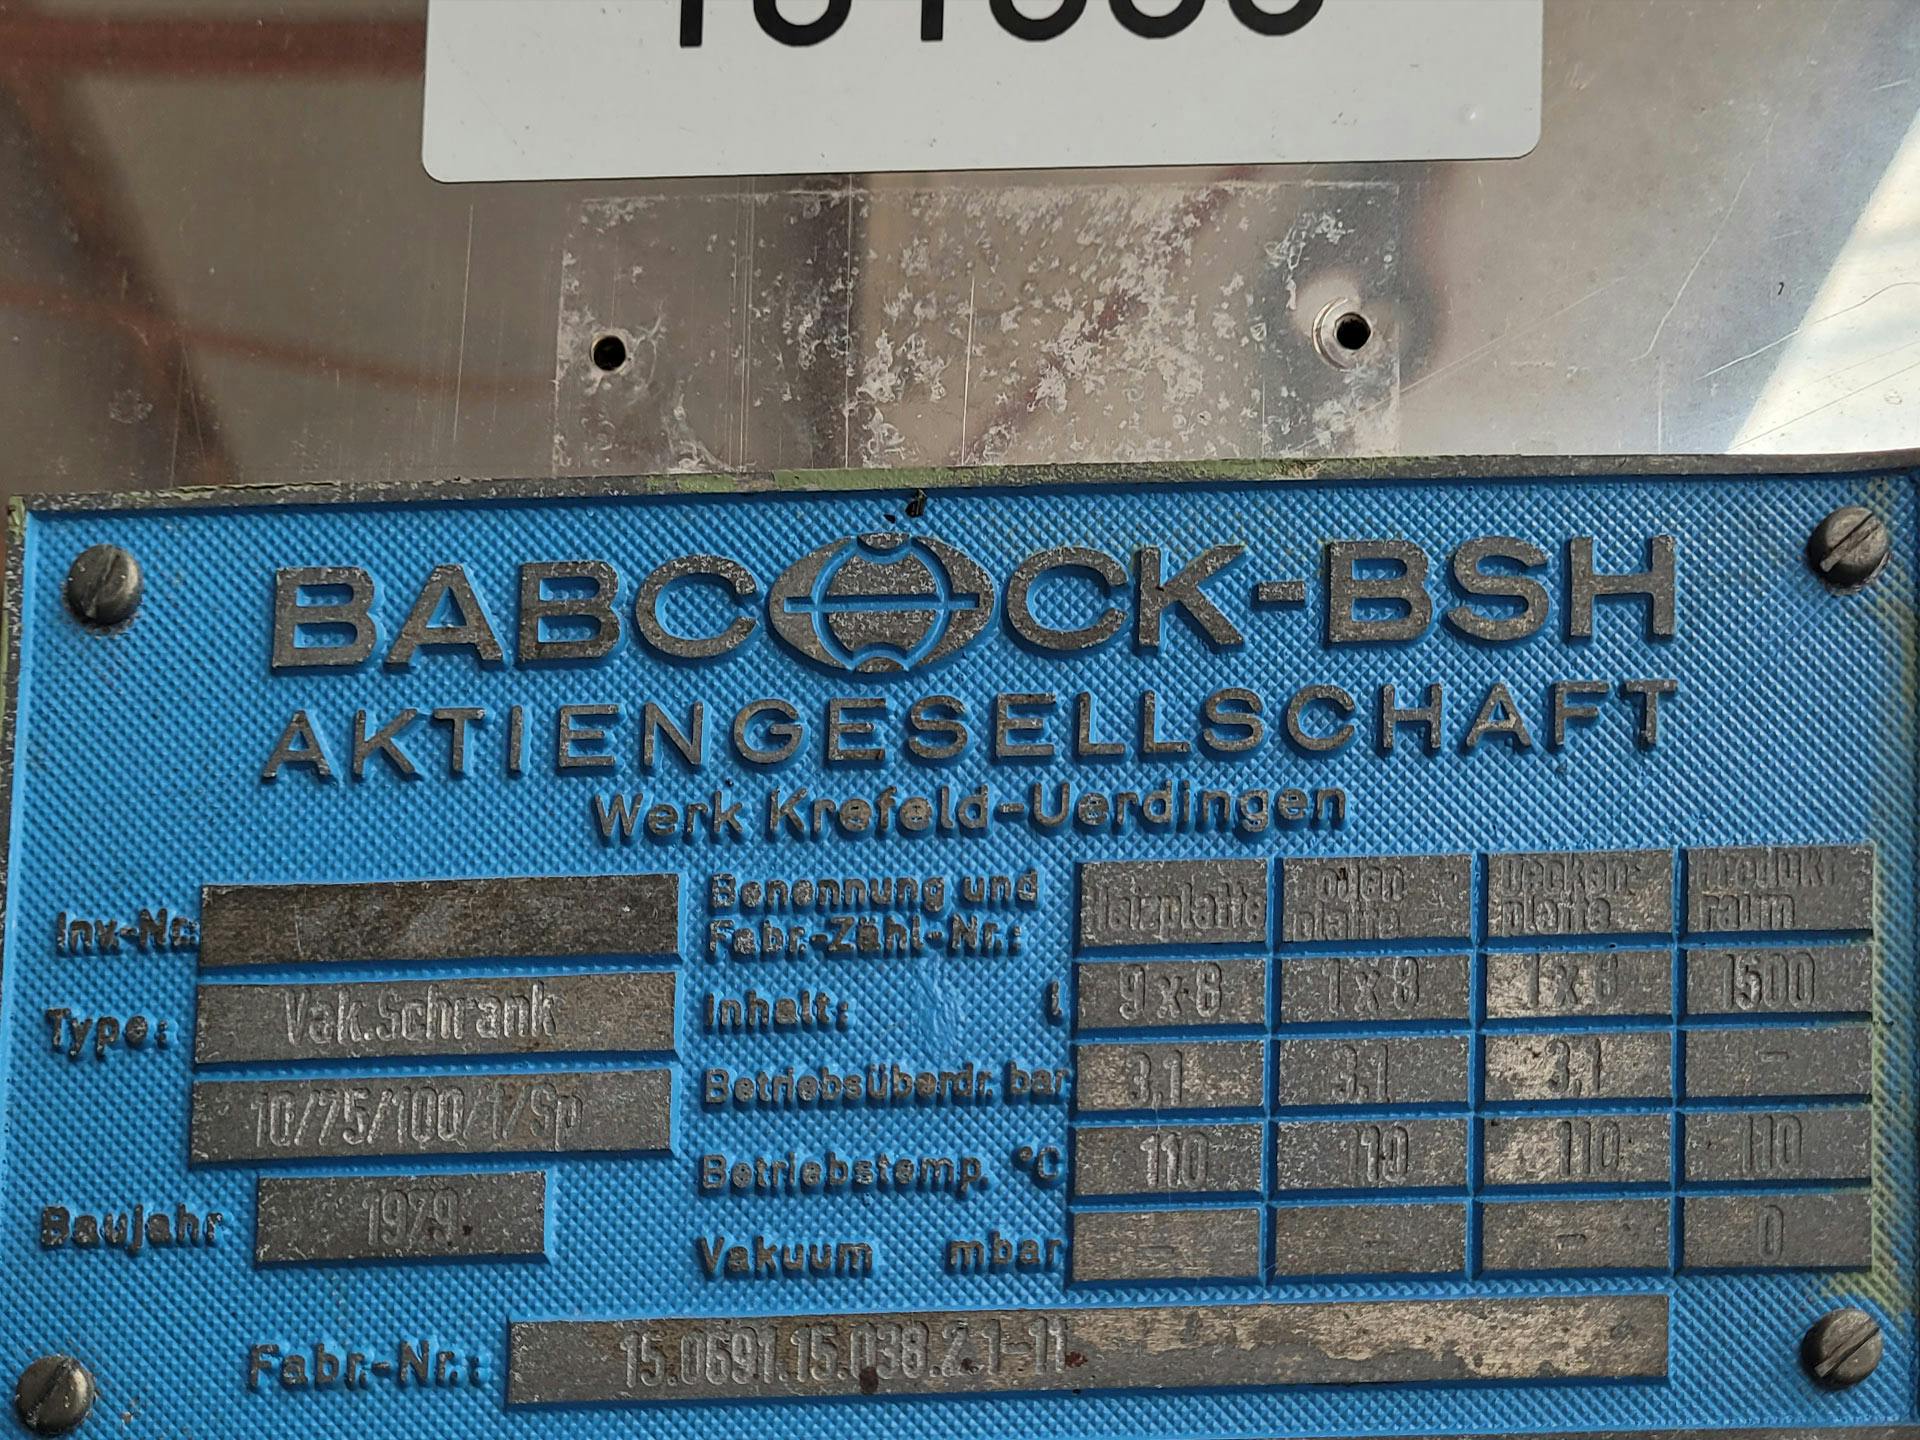 Babcock-BSH 10/75/100/1/SP - Trockenschrank - image 5